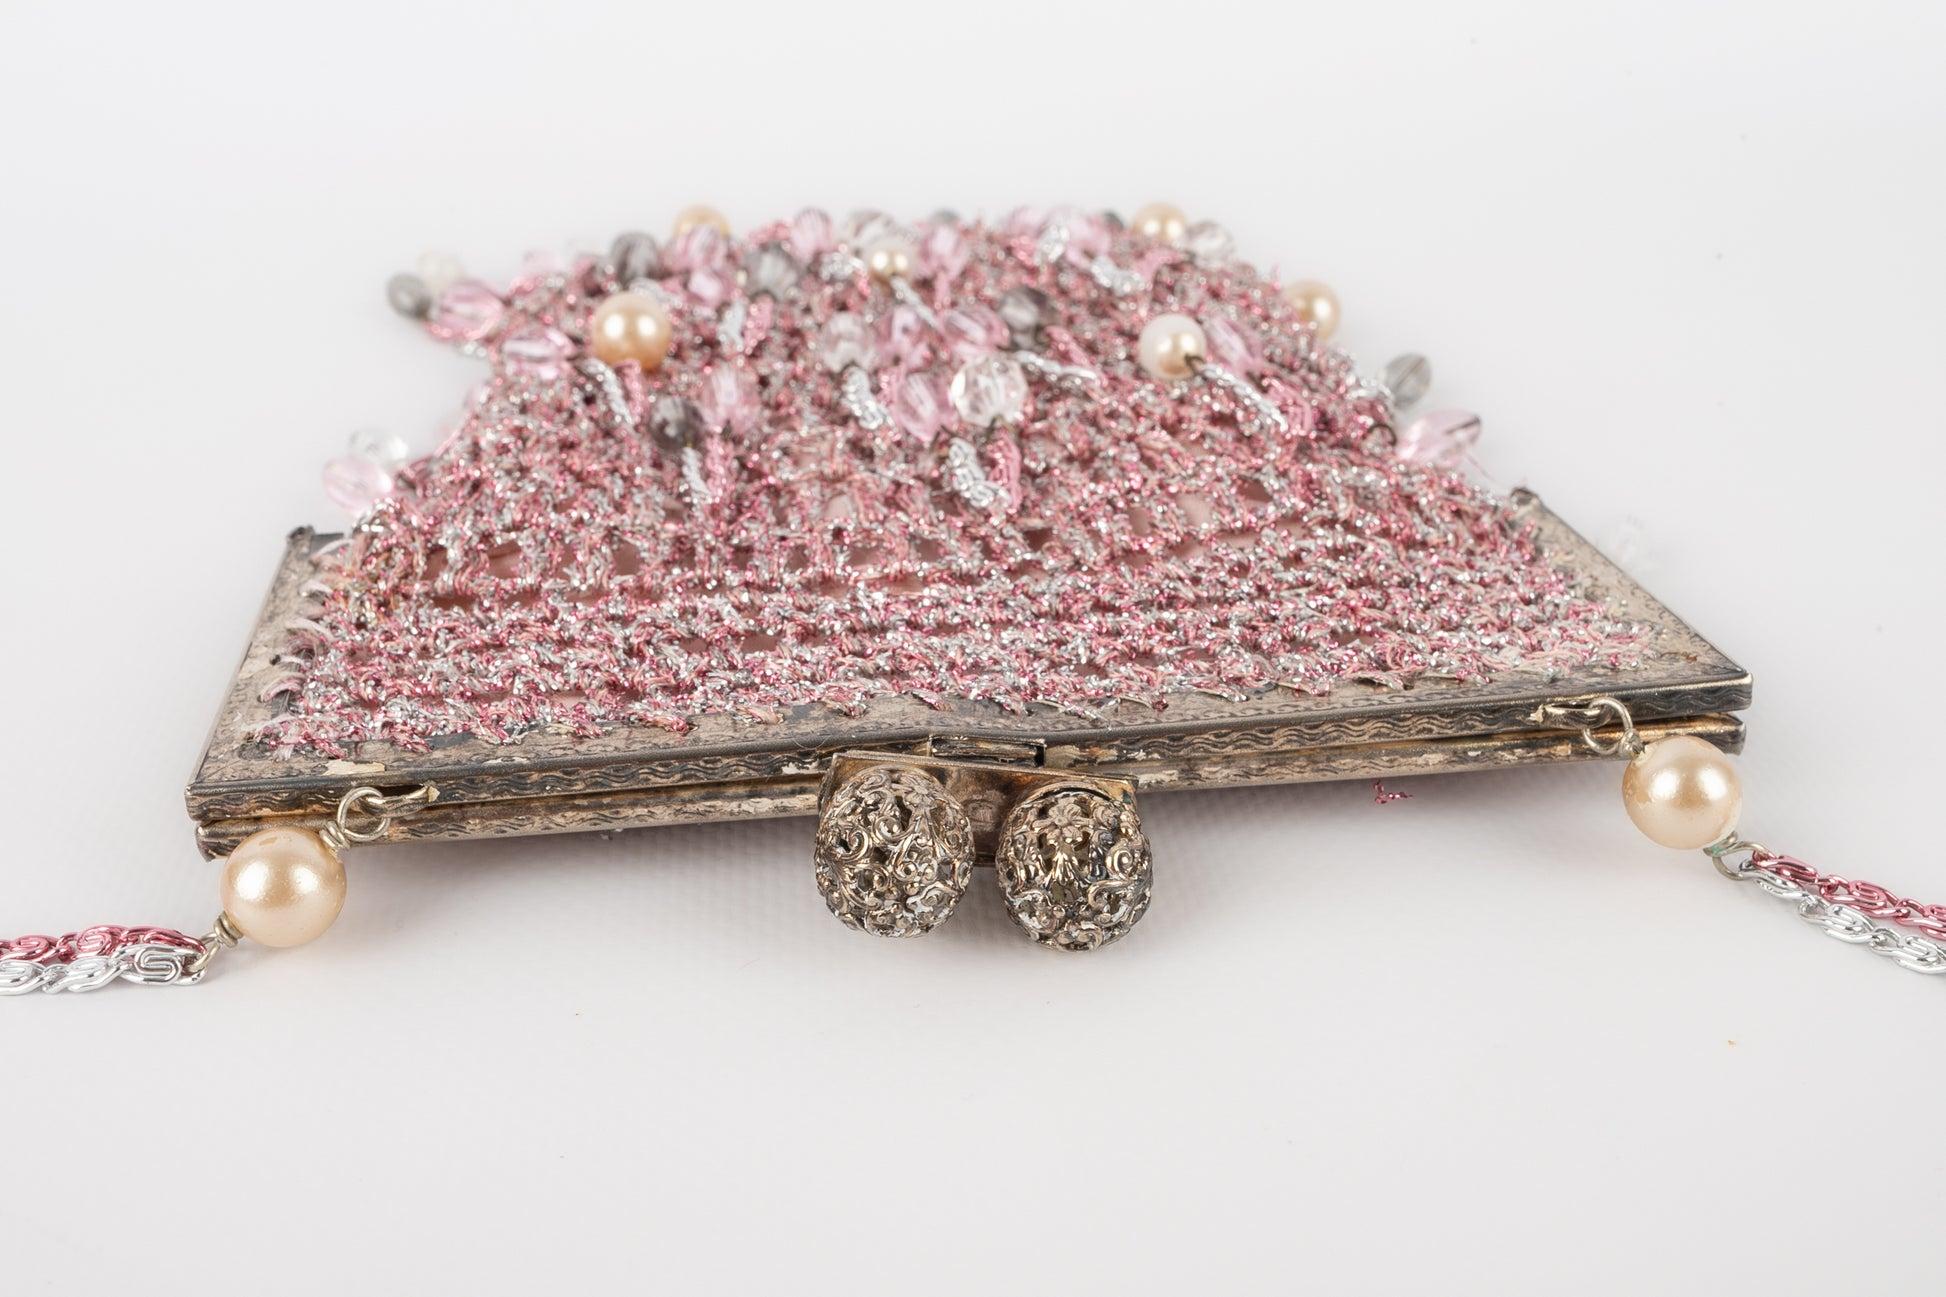 Azzaro - (Made in France) Rosafarbene und silberne Handtasche aus Netzgewebe mit Trachtenperlen. Zu erwähnen ist, dass einige Perlen beschädigt sind.

Zusätzliche Informationen:
Zustand: Guter Zustand
Abmessungen: 17 cm x 16 cm - Tiefe: 1 cm -